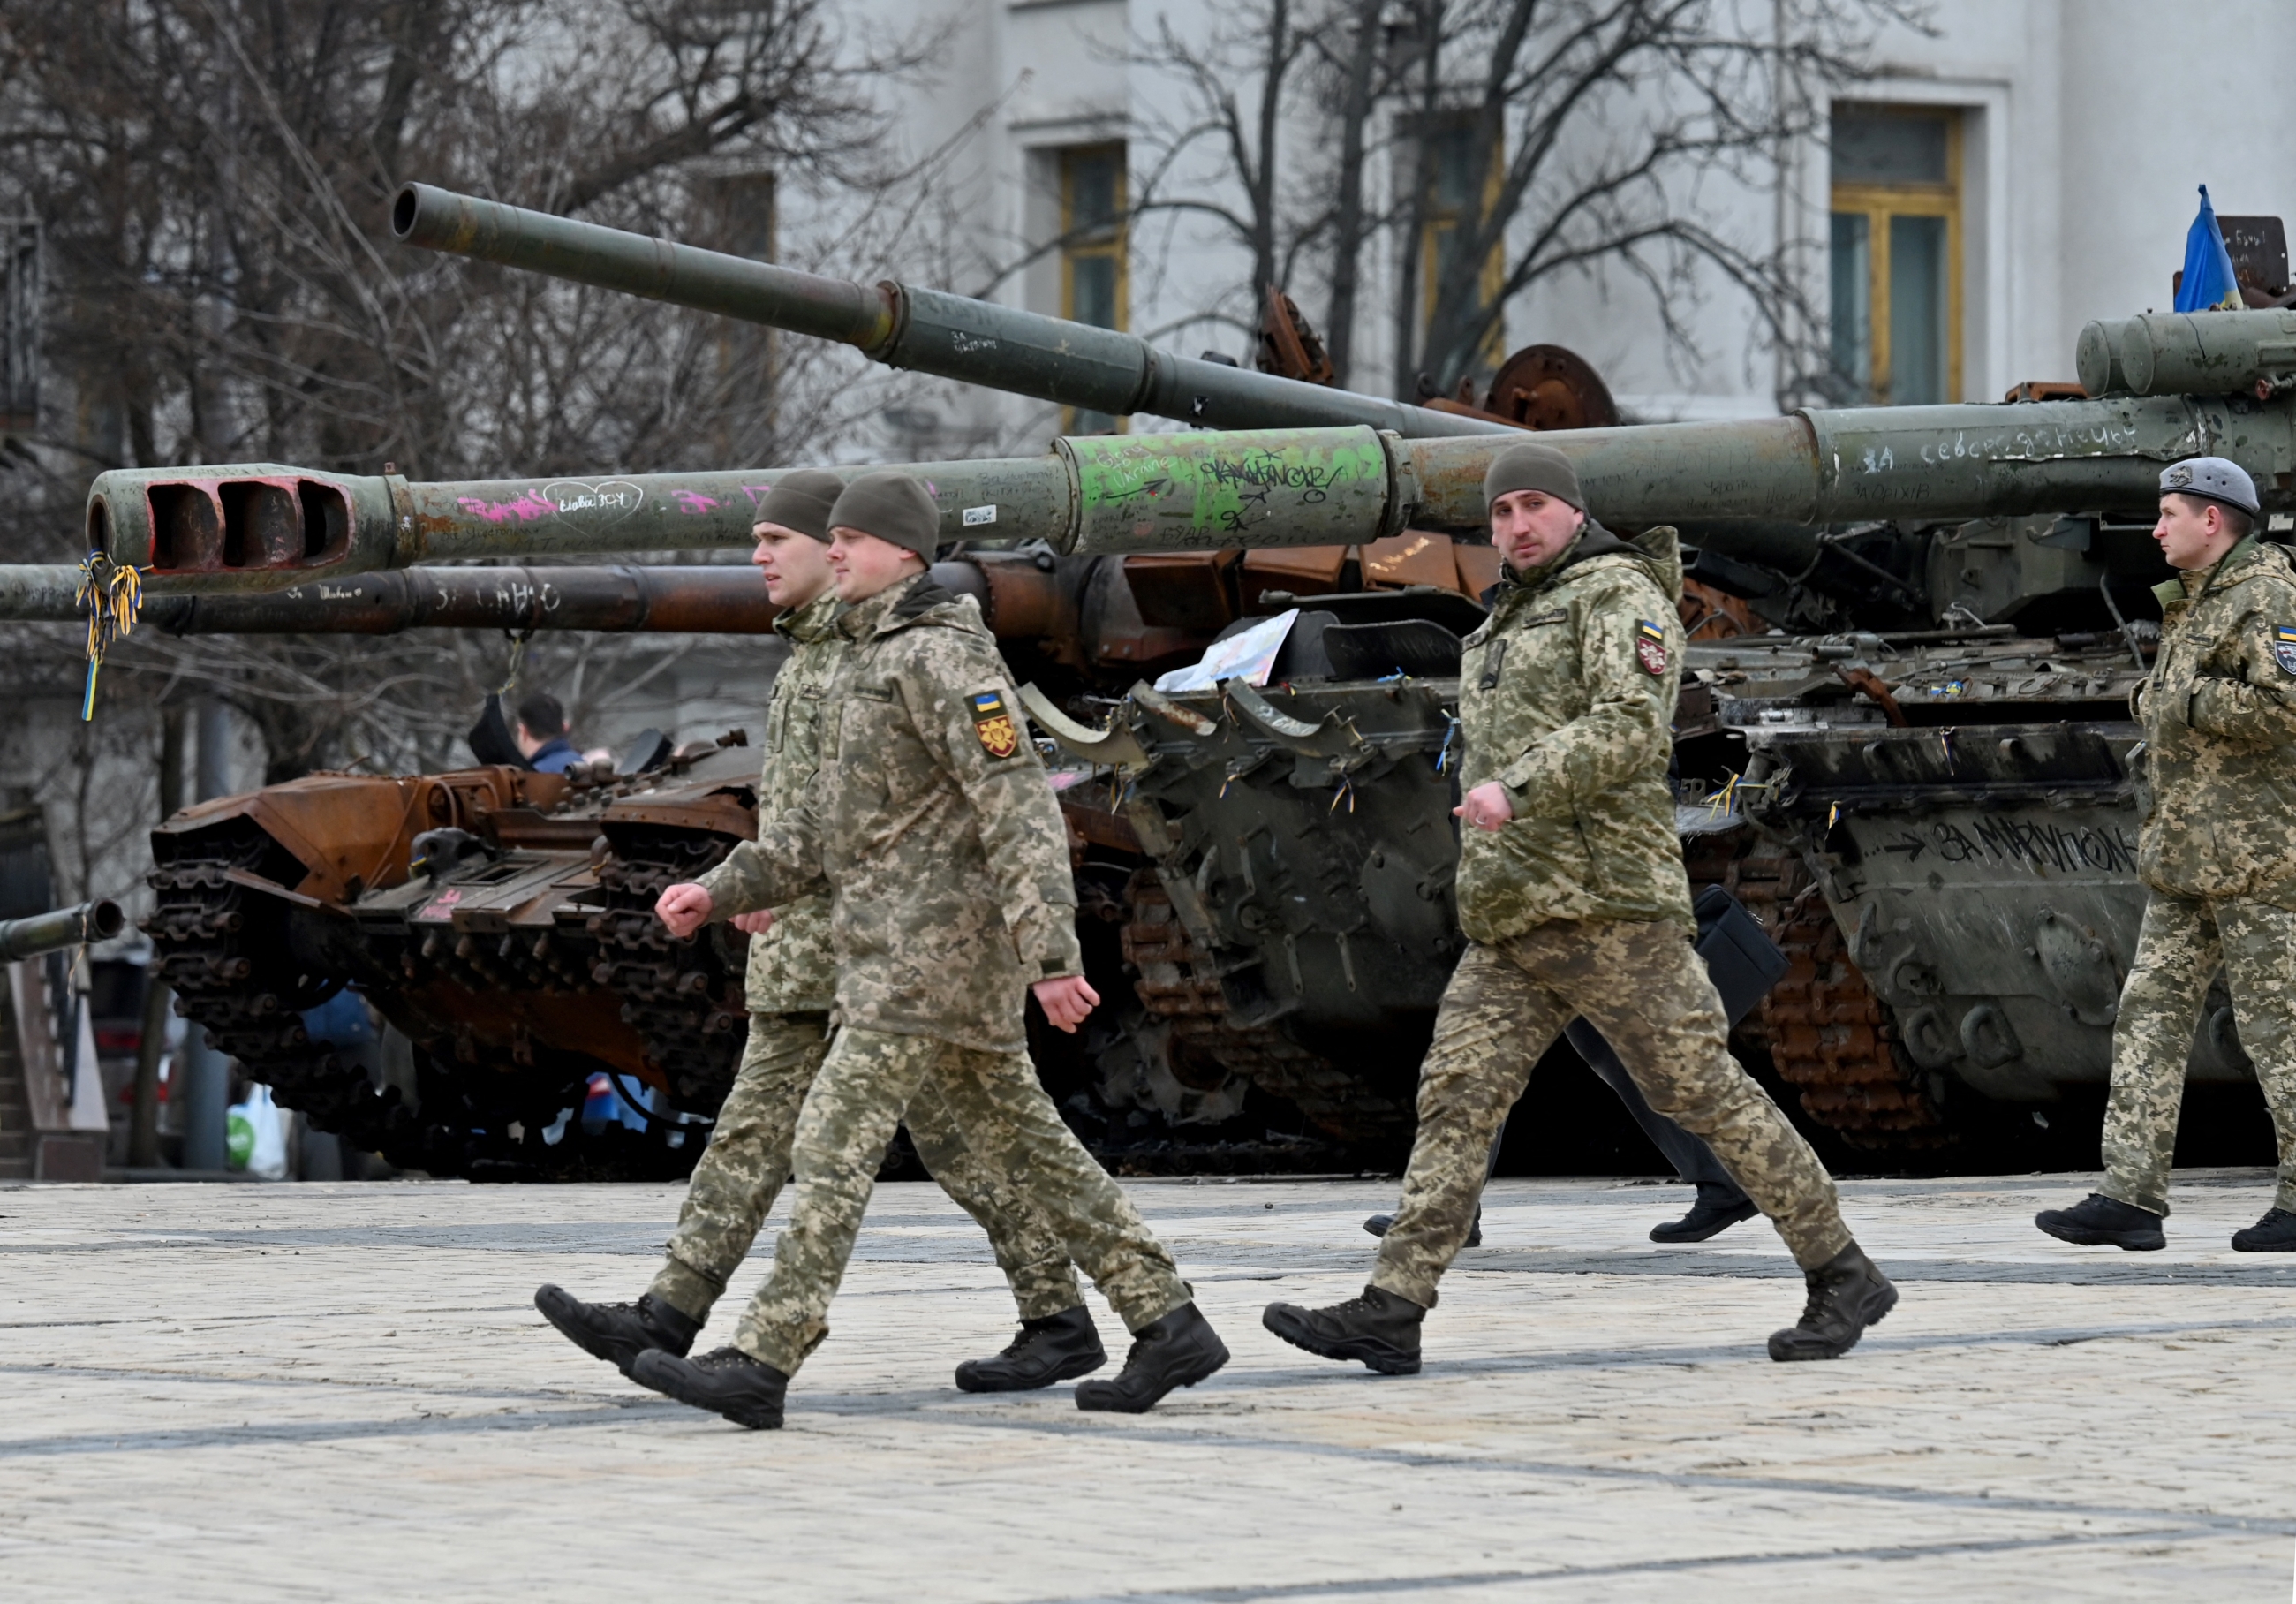 Des officiers ukrainiens passent devant des véhicules militaires russes détruits présentés dans une exposition en plein air à Kyiv, le 27 février 2023 (AFP)